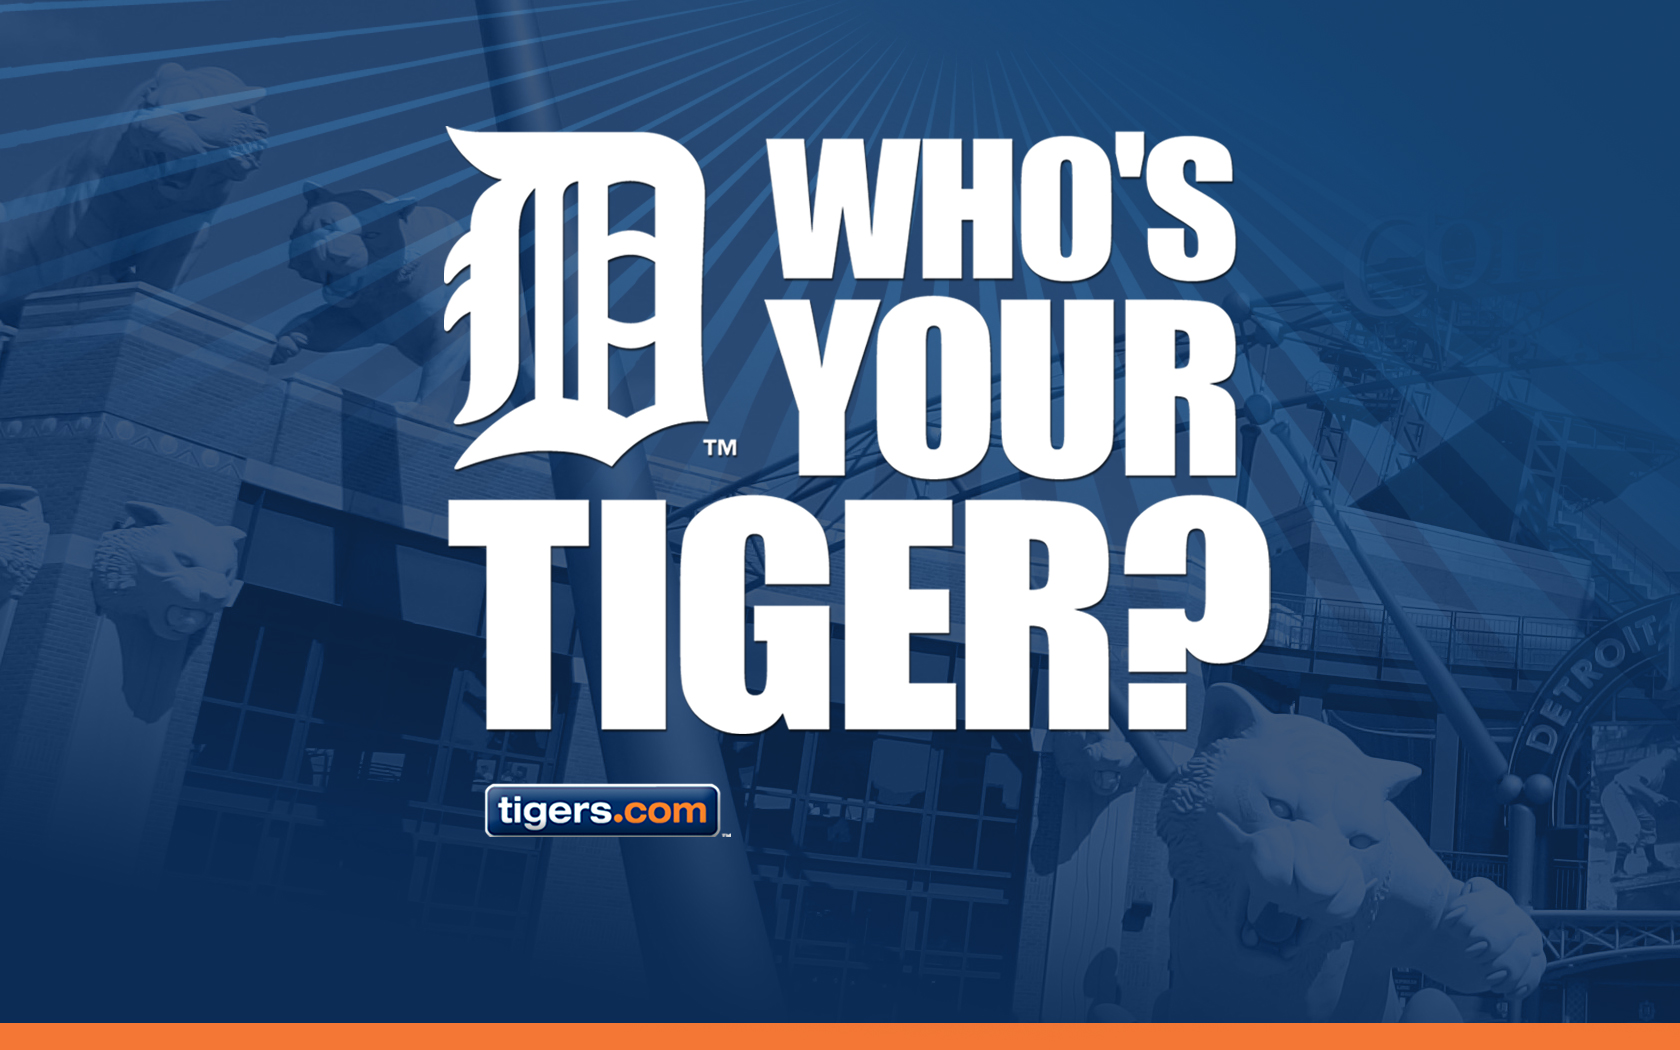 Detroit Tigers Wallpaper